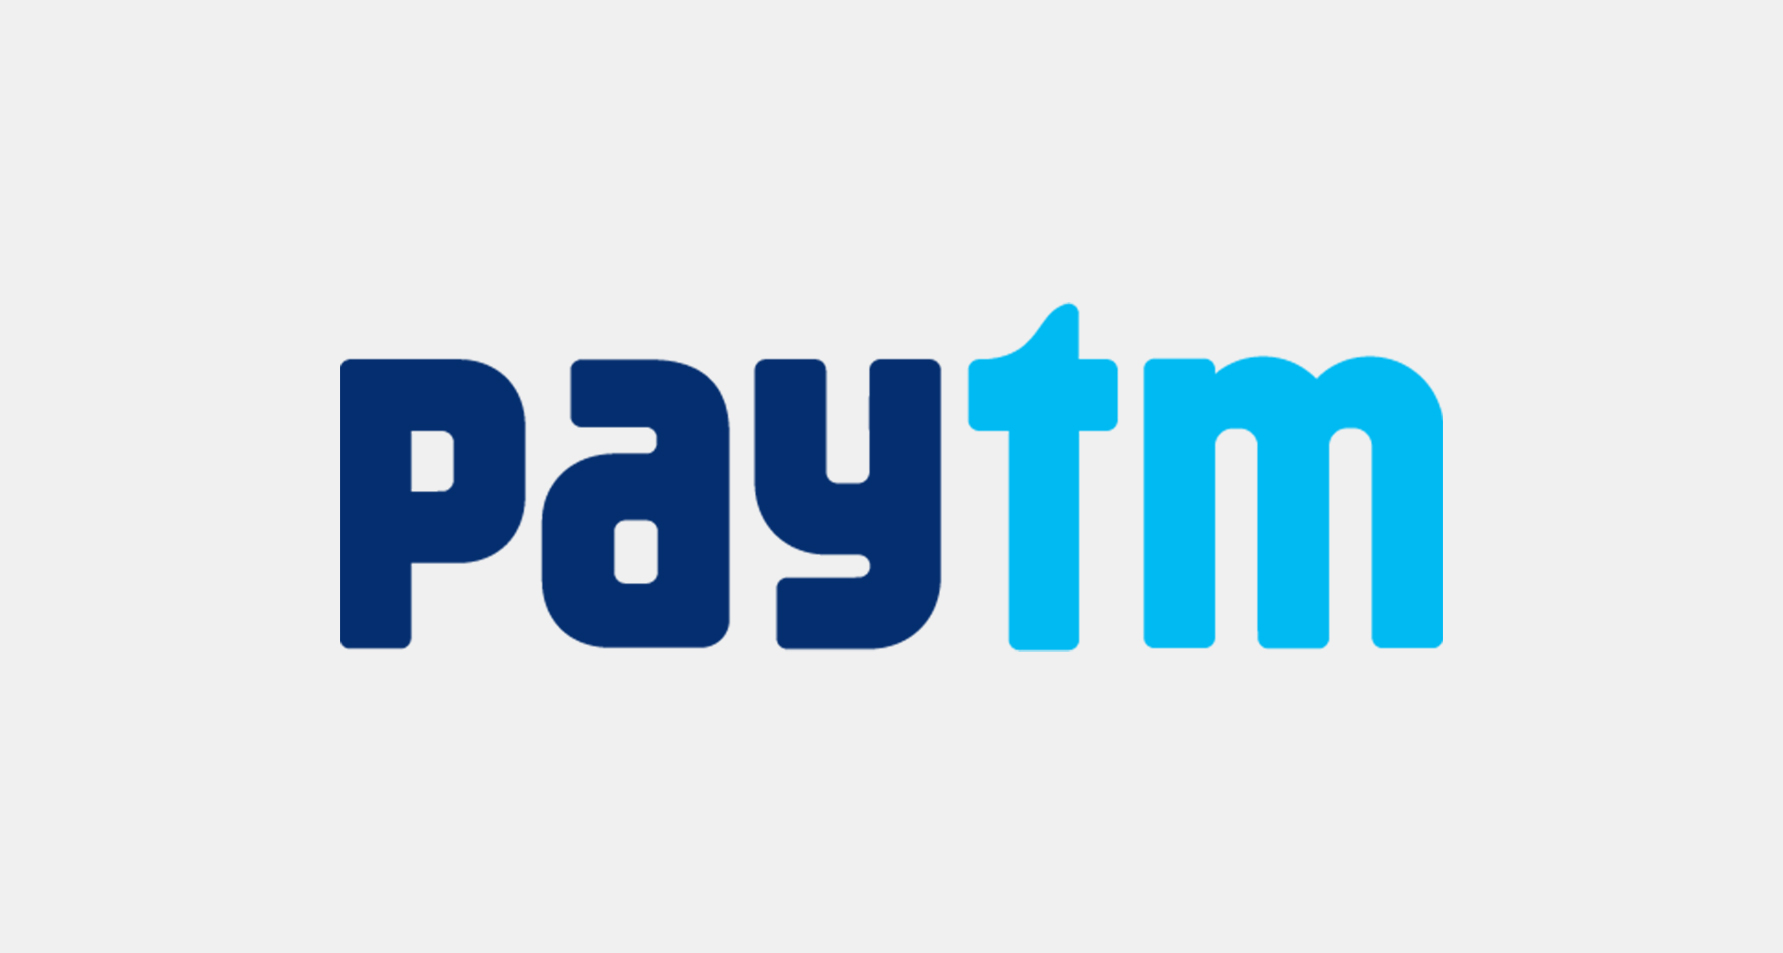 “印度支付宝”Paytm因涉嫌洗钱被勒令暂停业务，巴菲特等投资者纷纷跑路